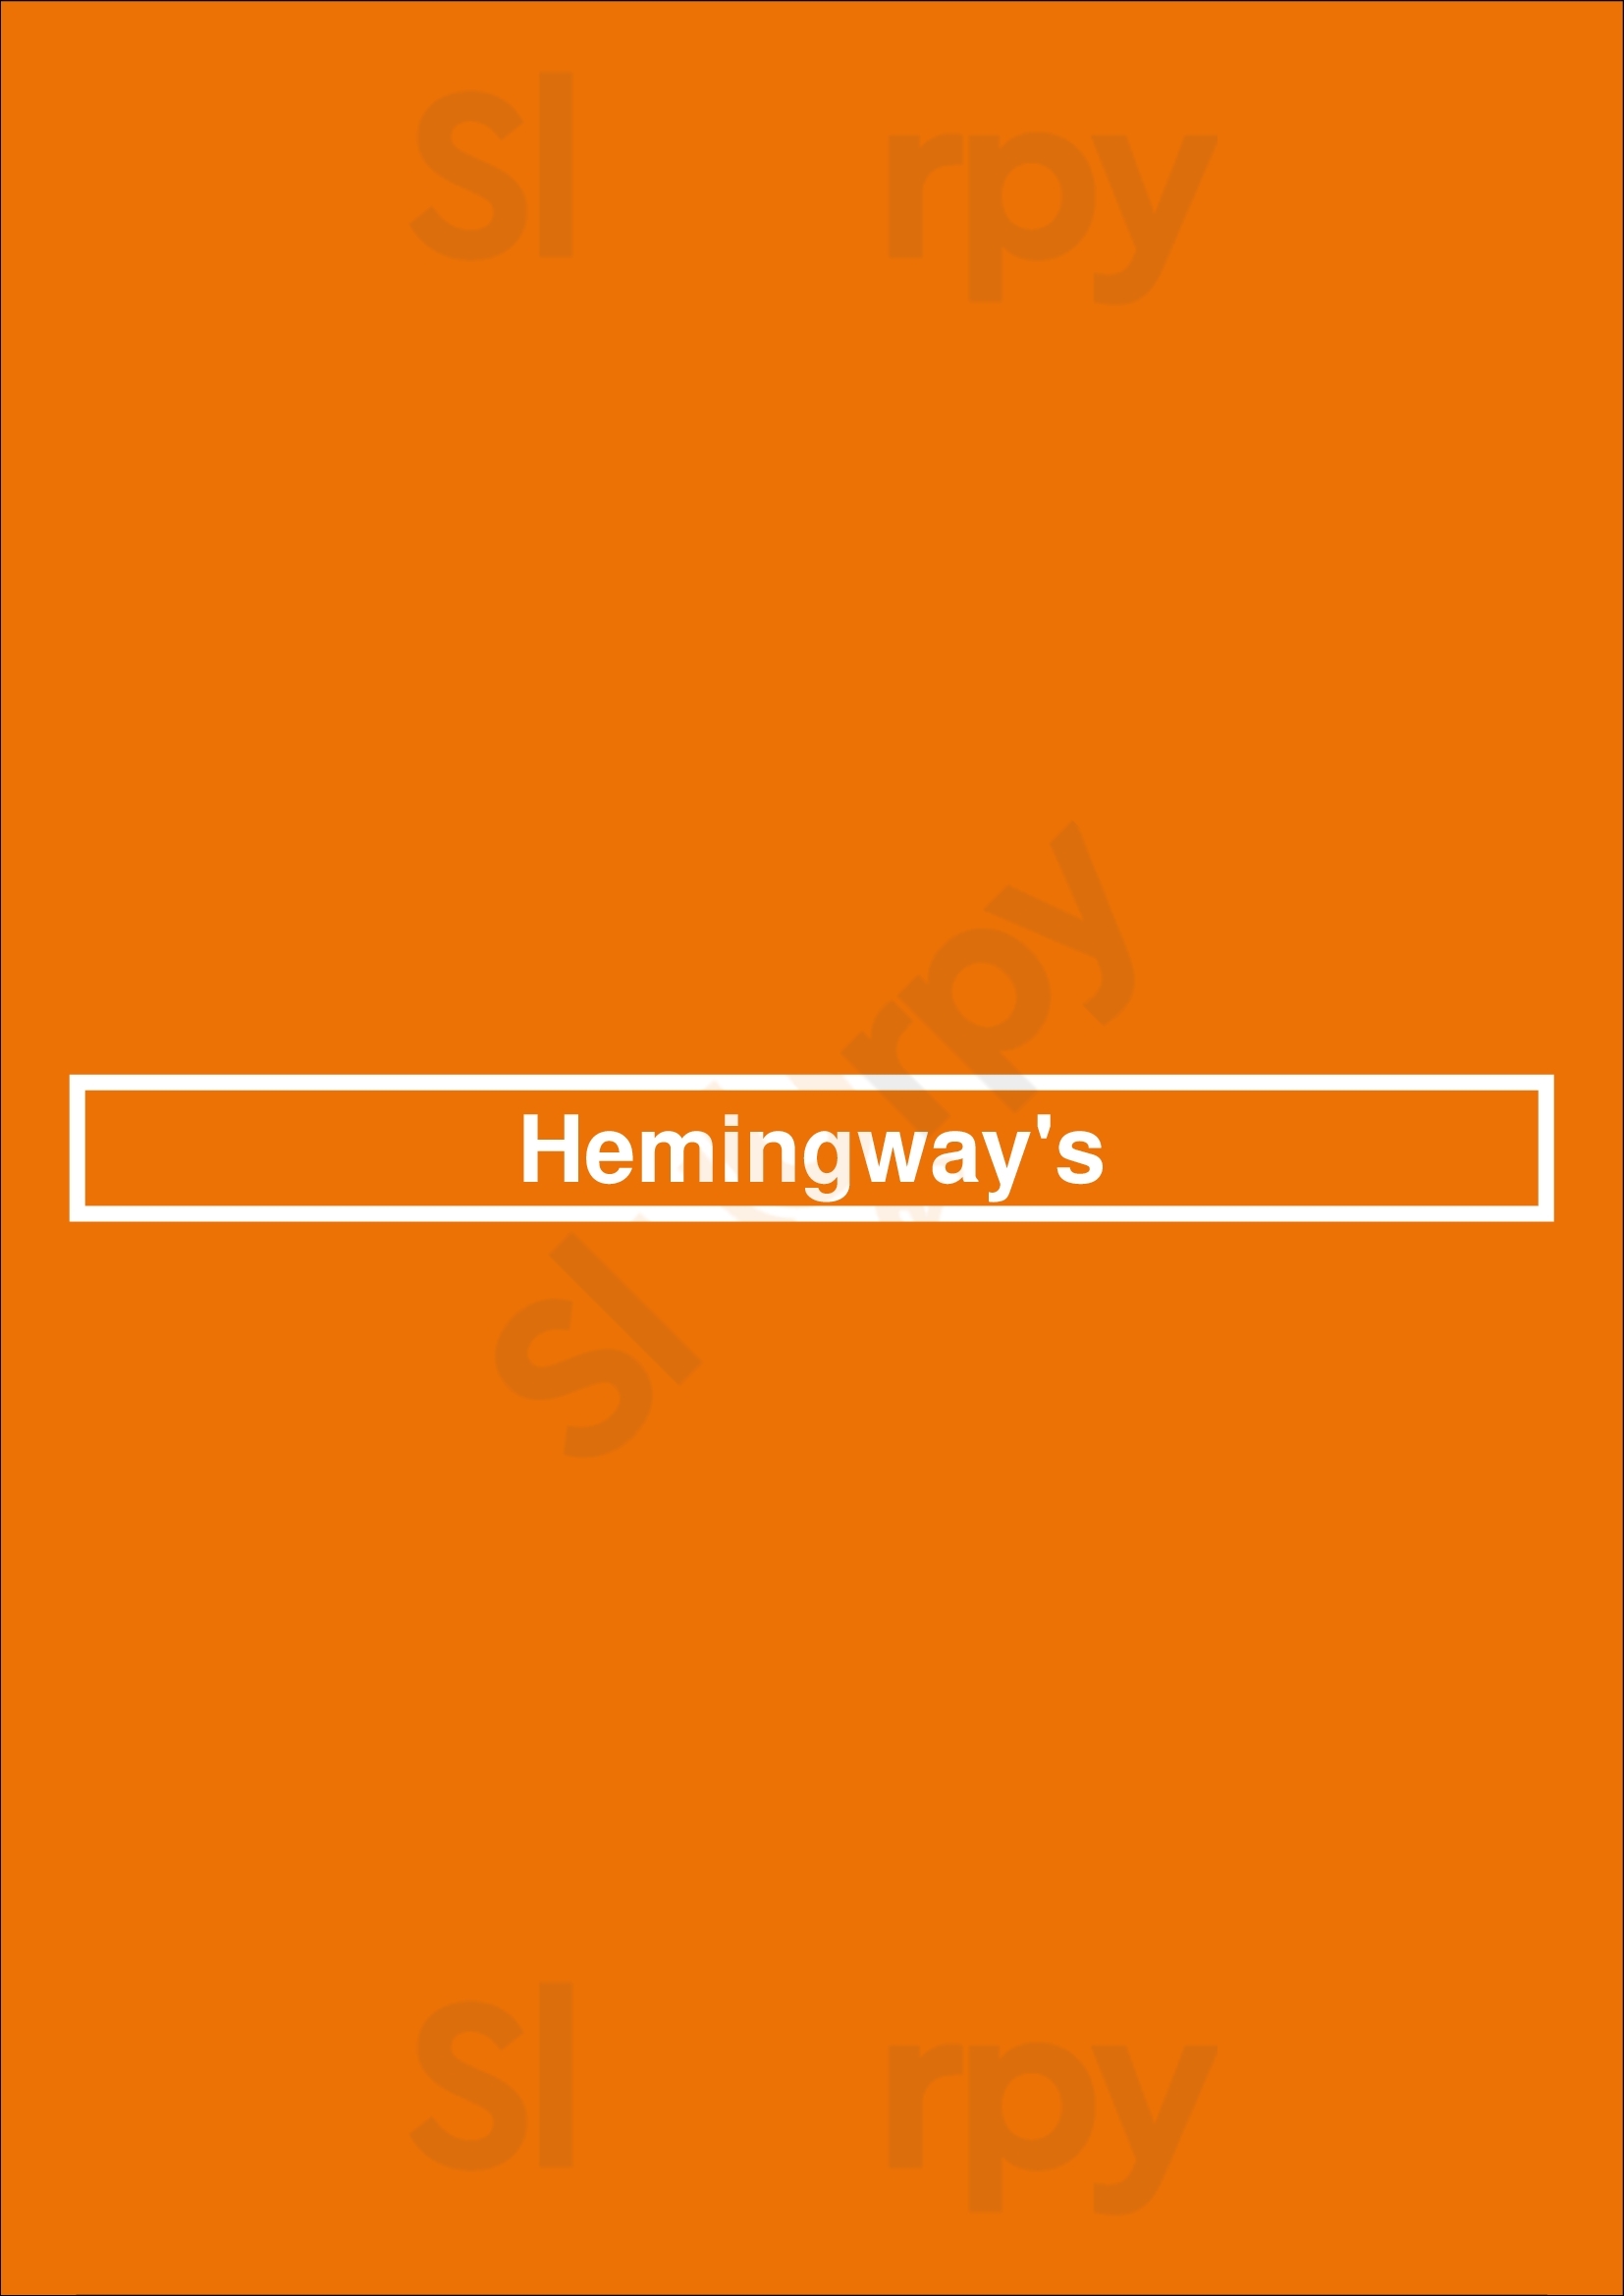 Hemingway's Orlando Menu - 1